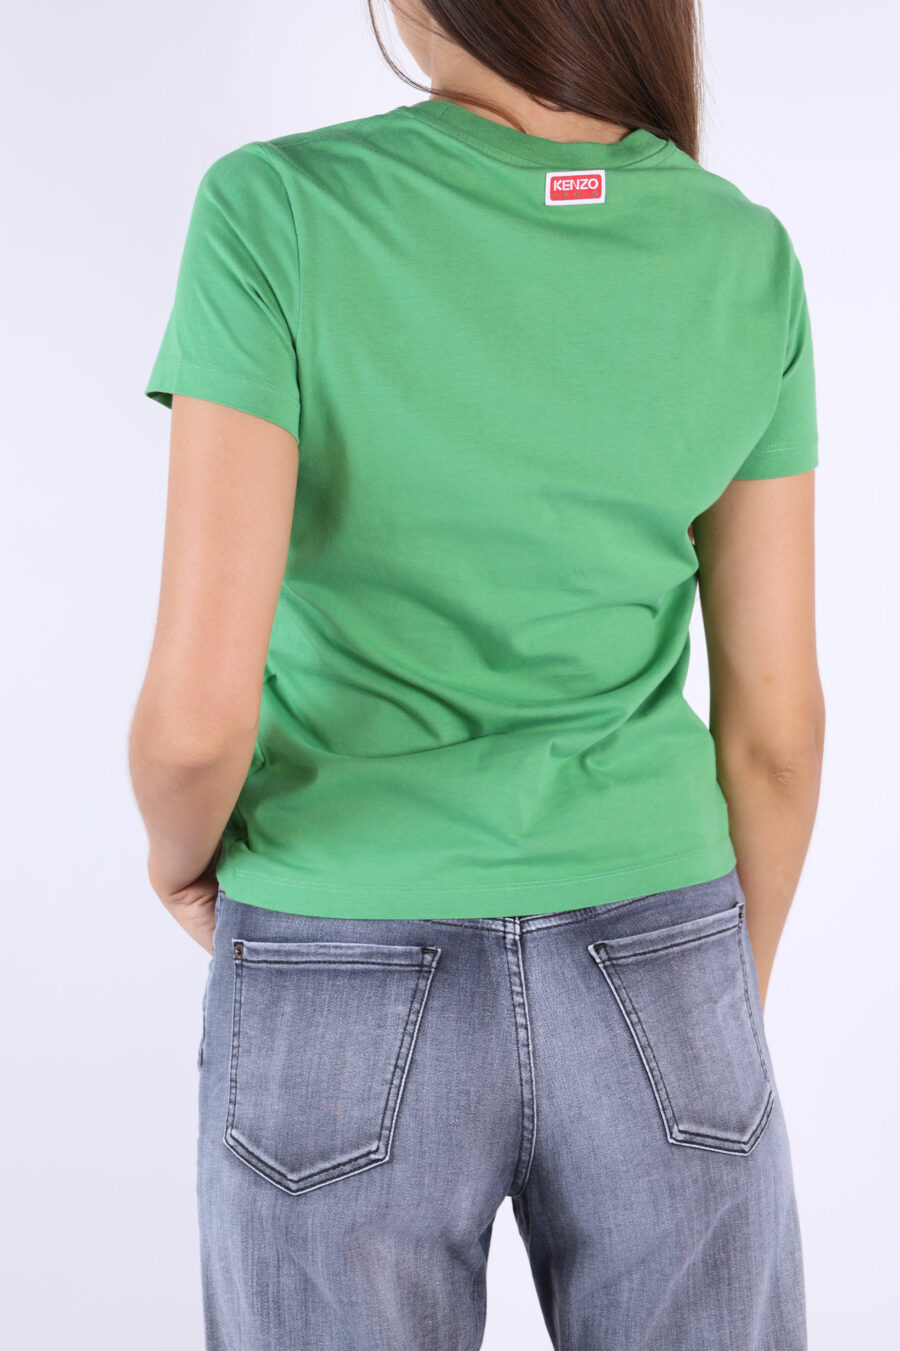 T-shirt verde com o logótipo "tigre" bordado - 361223054662201997